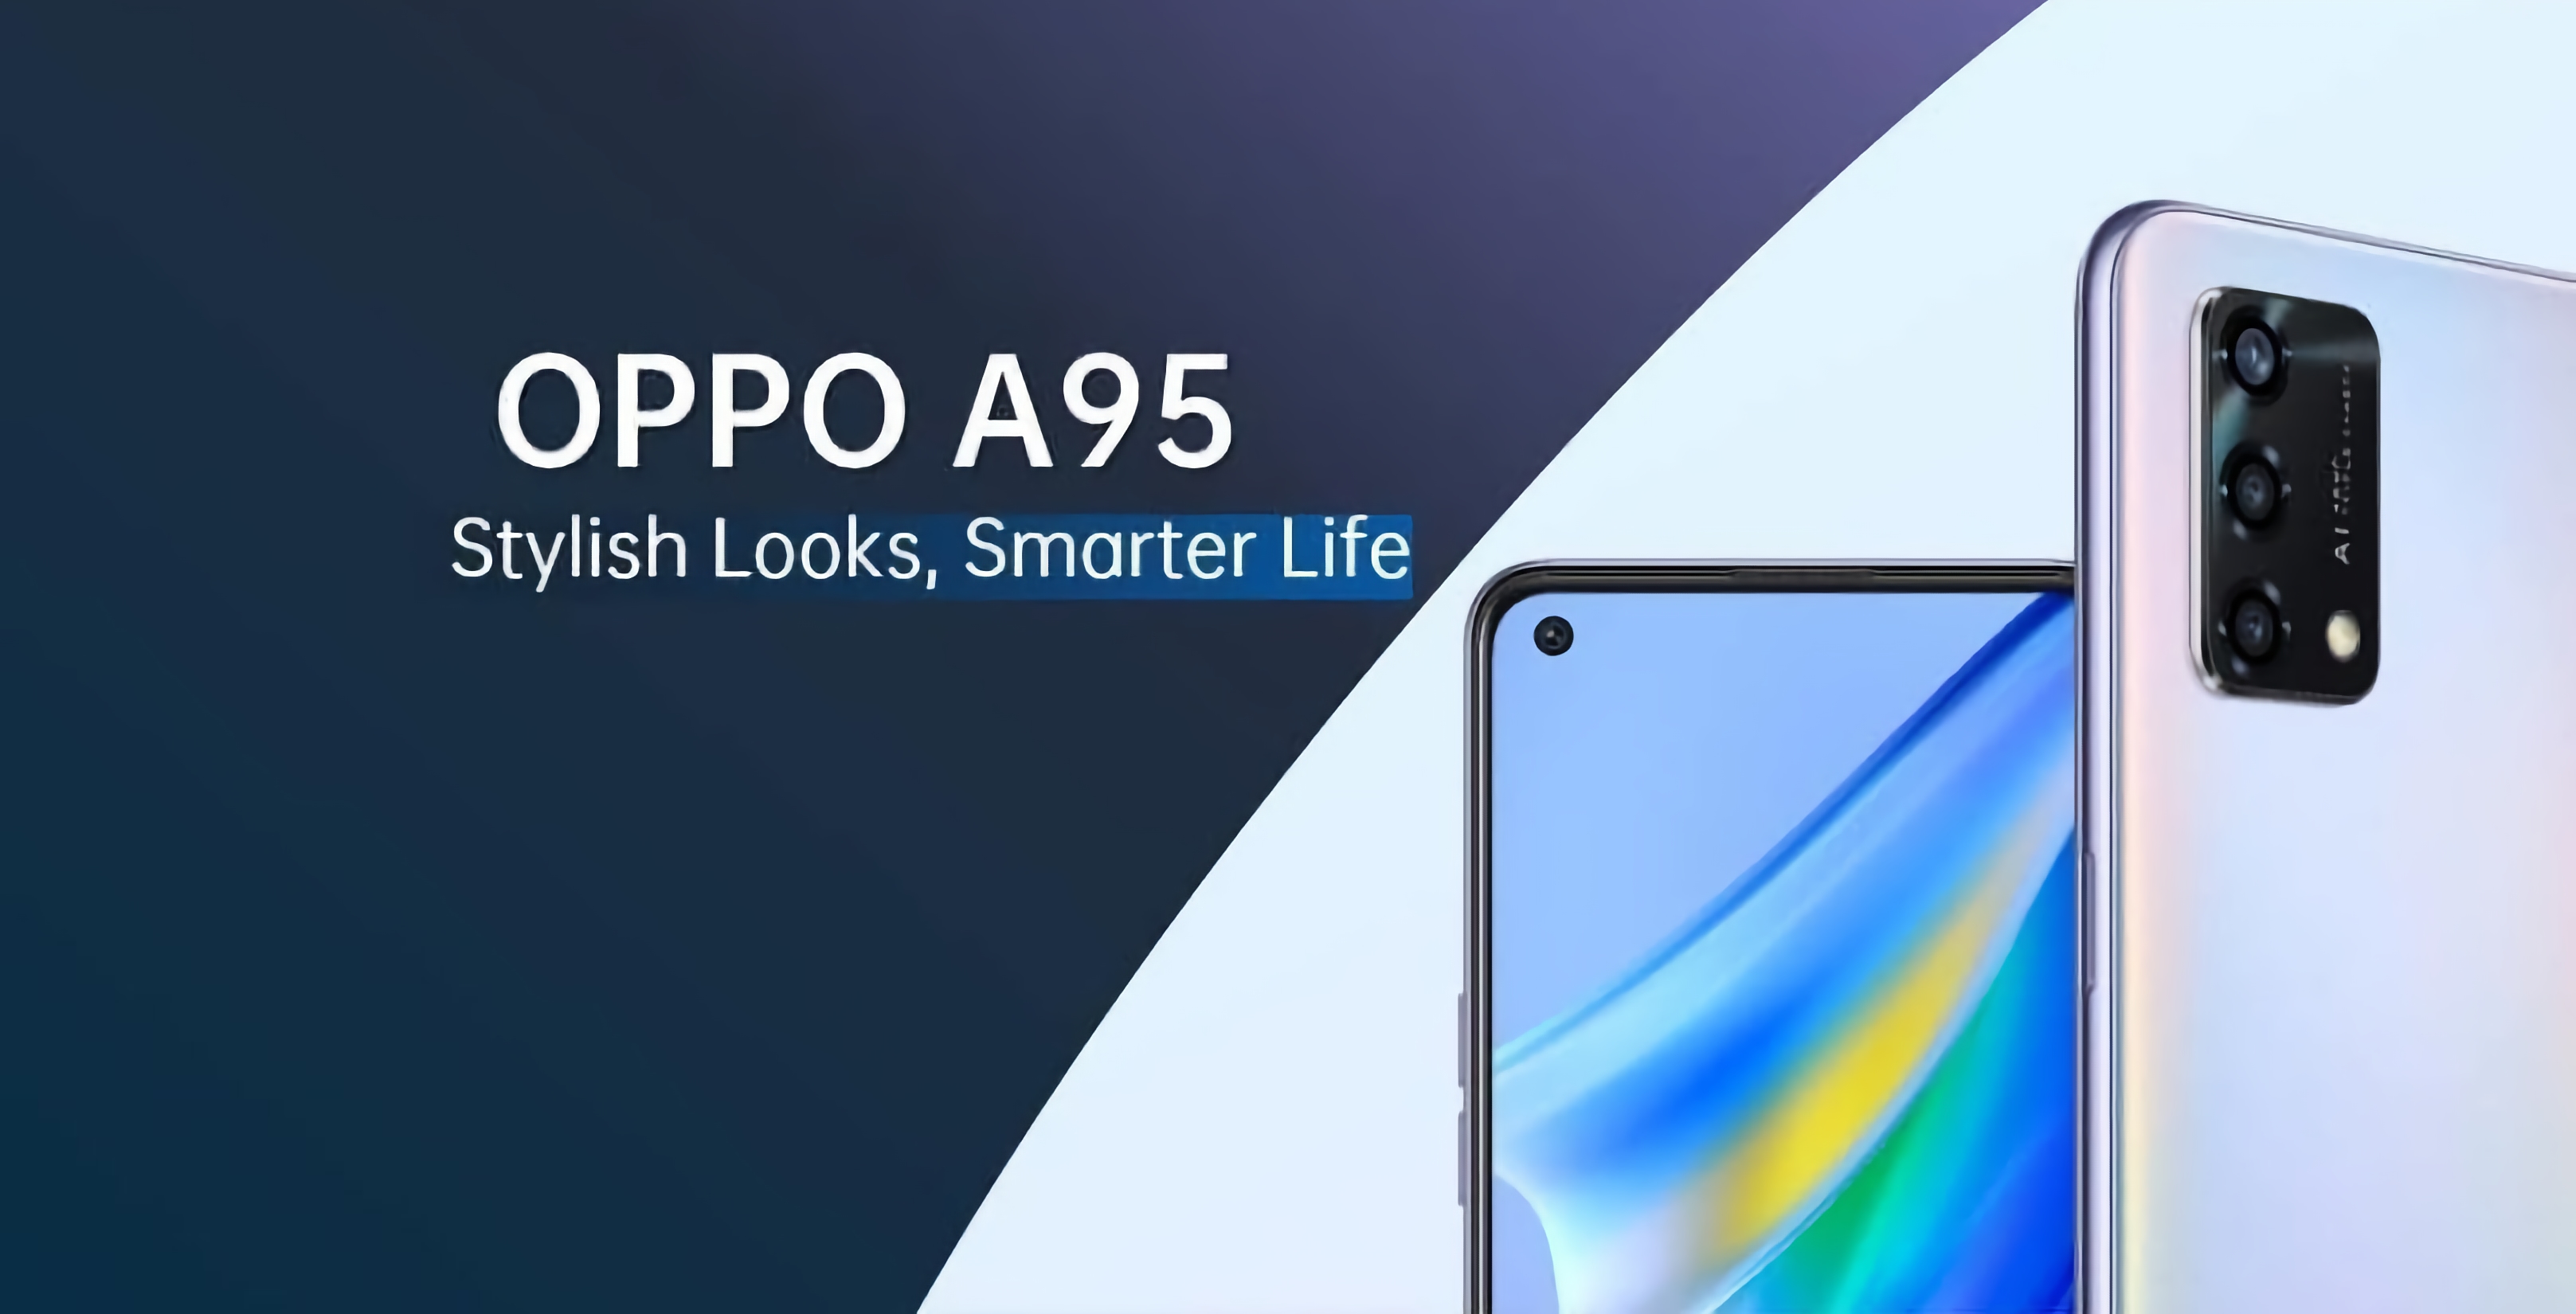 OPPO A95 mit Snapdragon 662 Chip, 5000mAh Akku und 33W Schnellladung wird diesen Monat vorgestellt